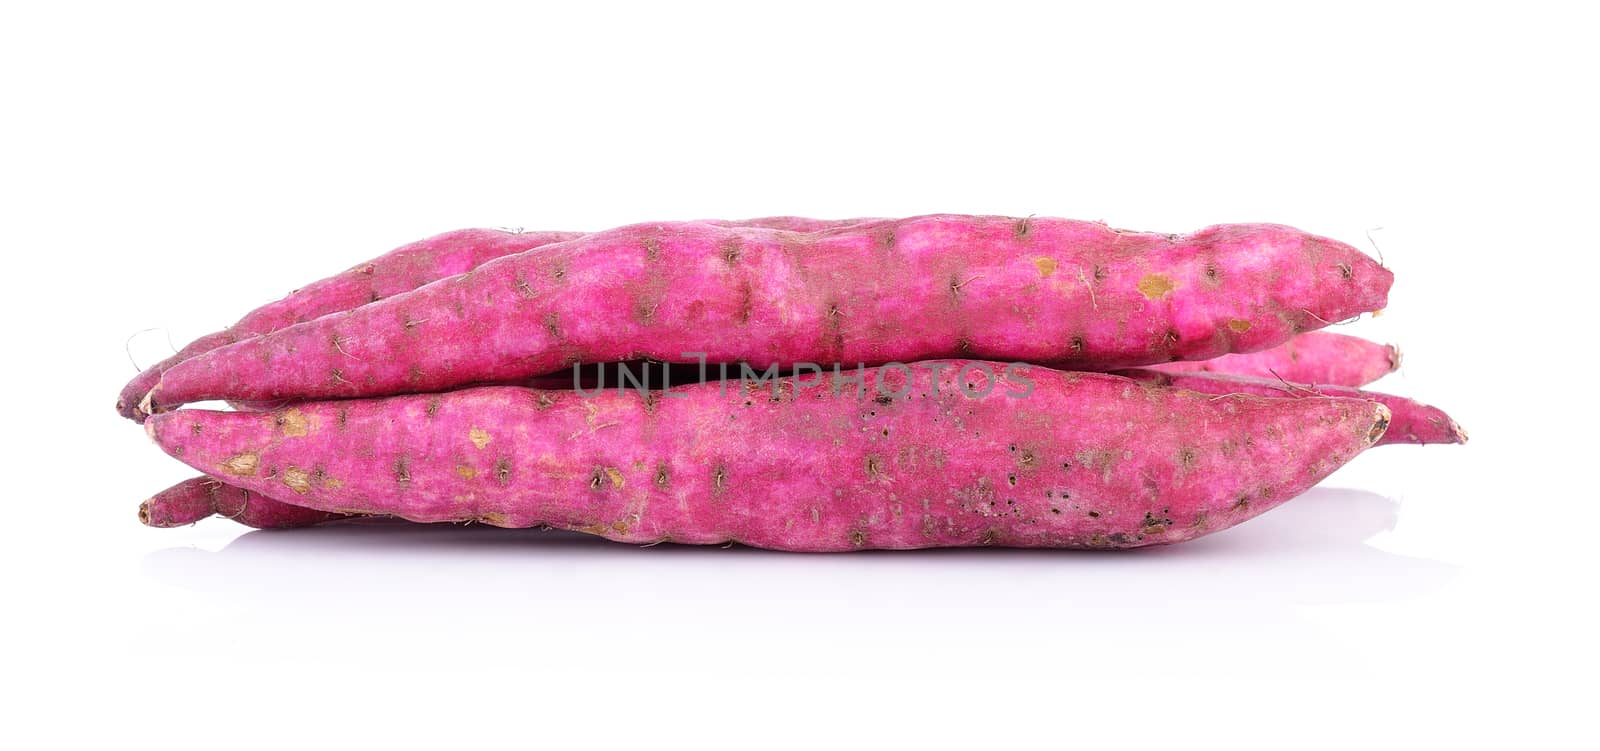 sweet potato by sommai